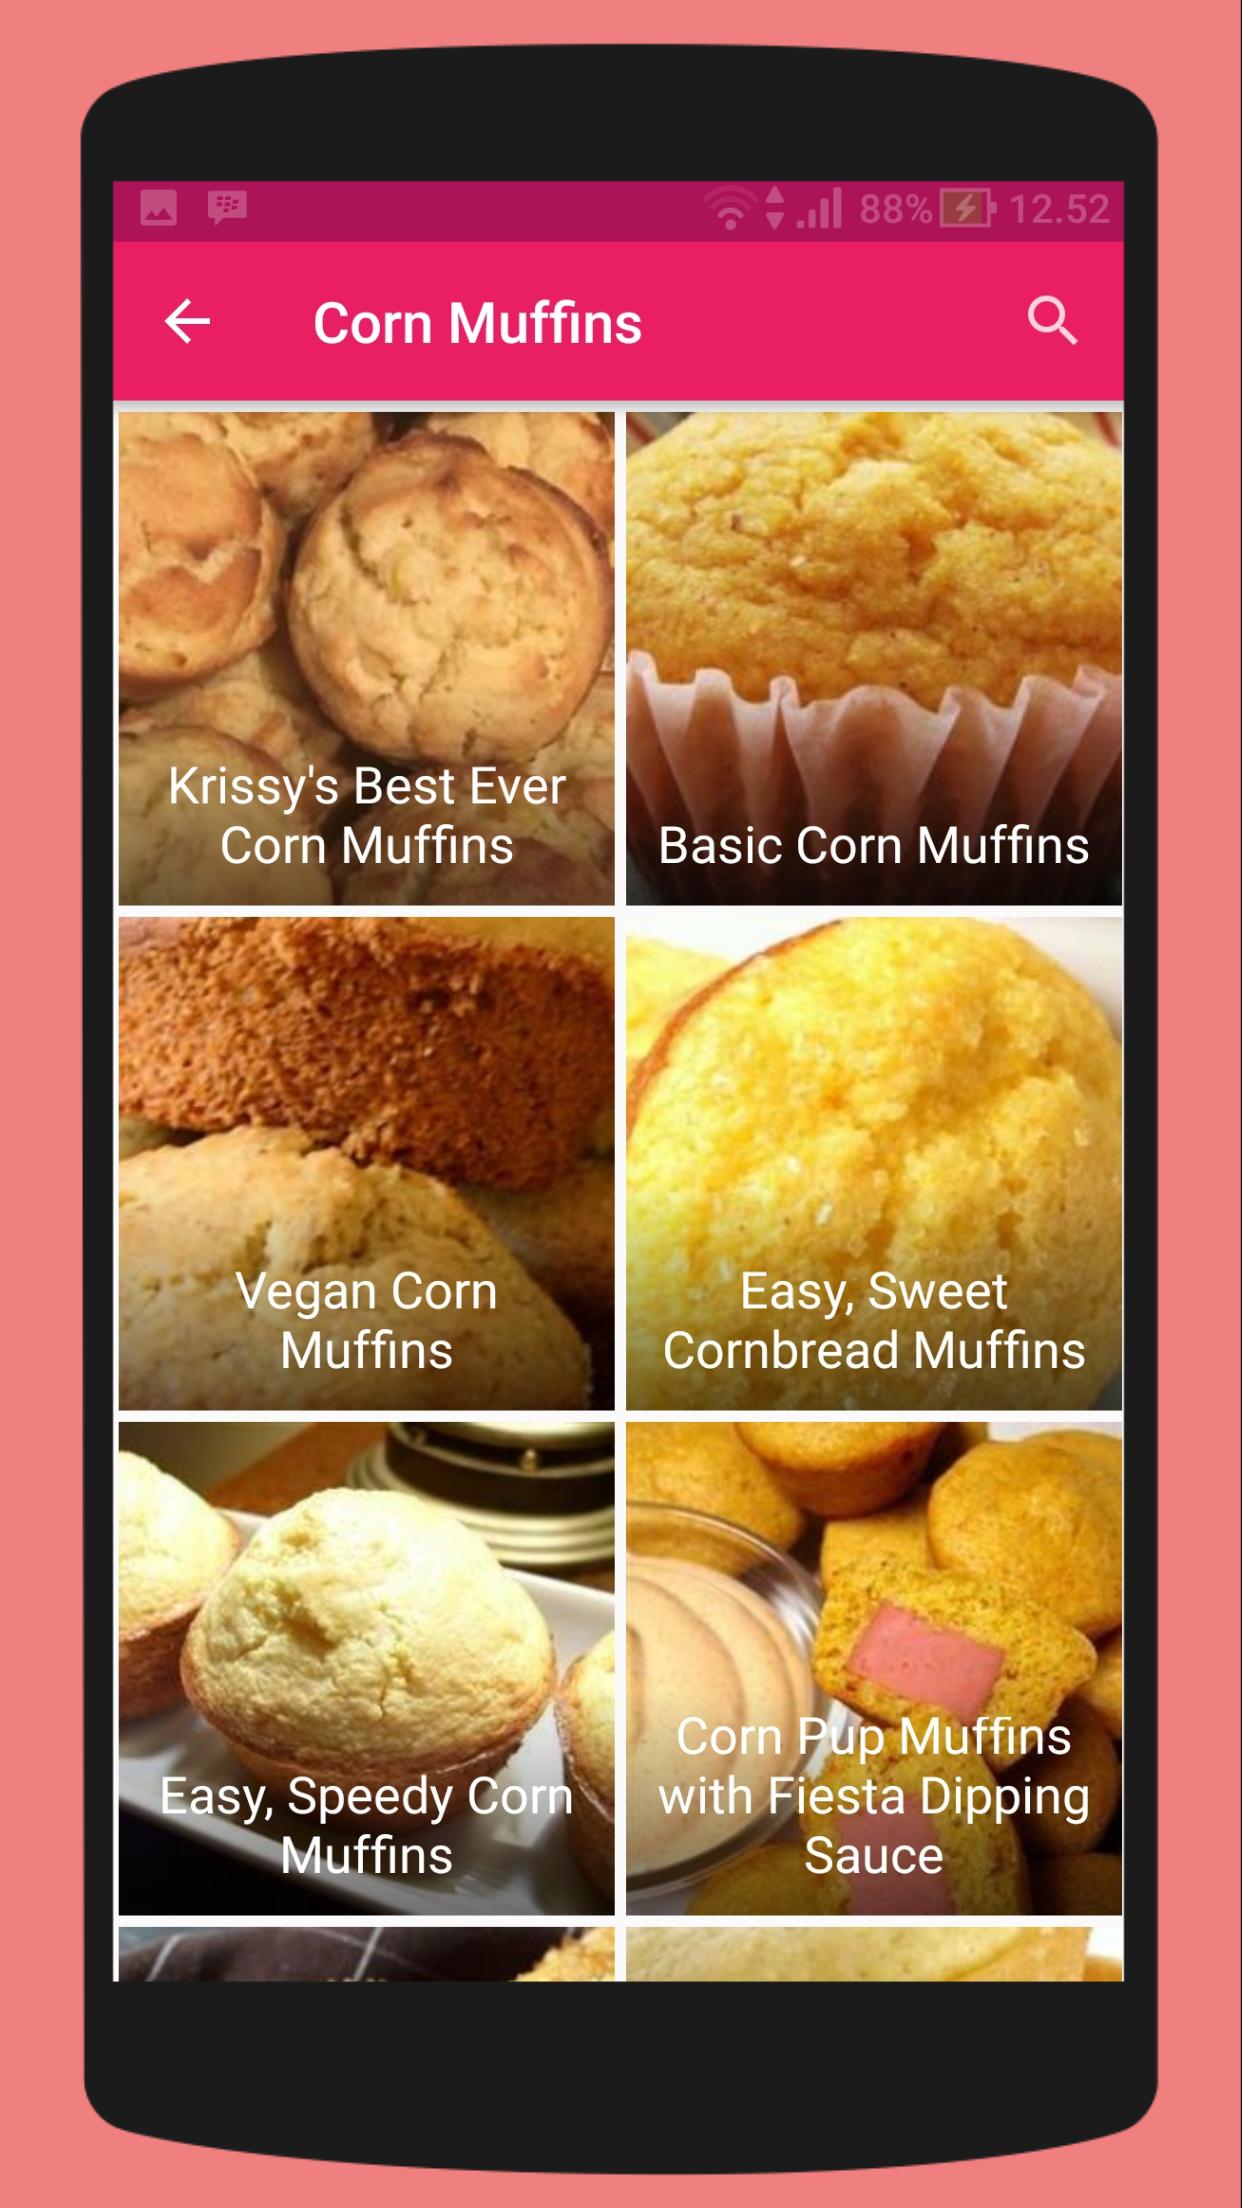 Muffin Recipes